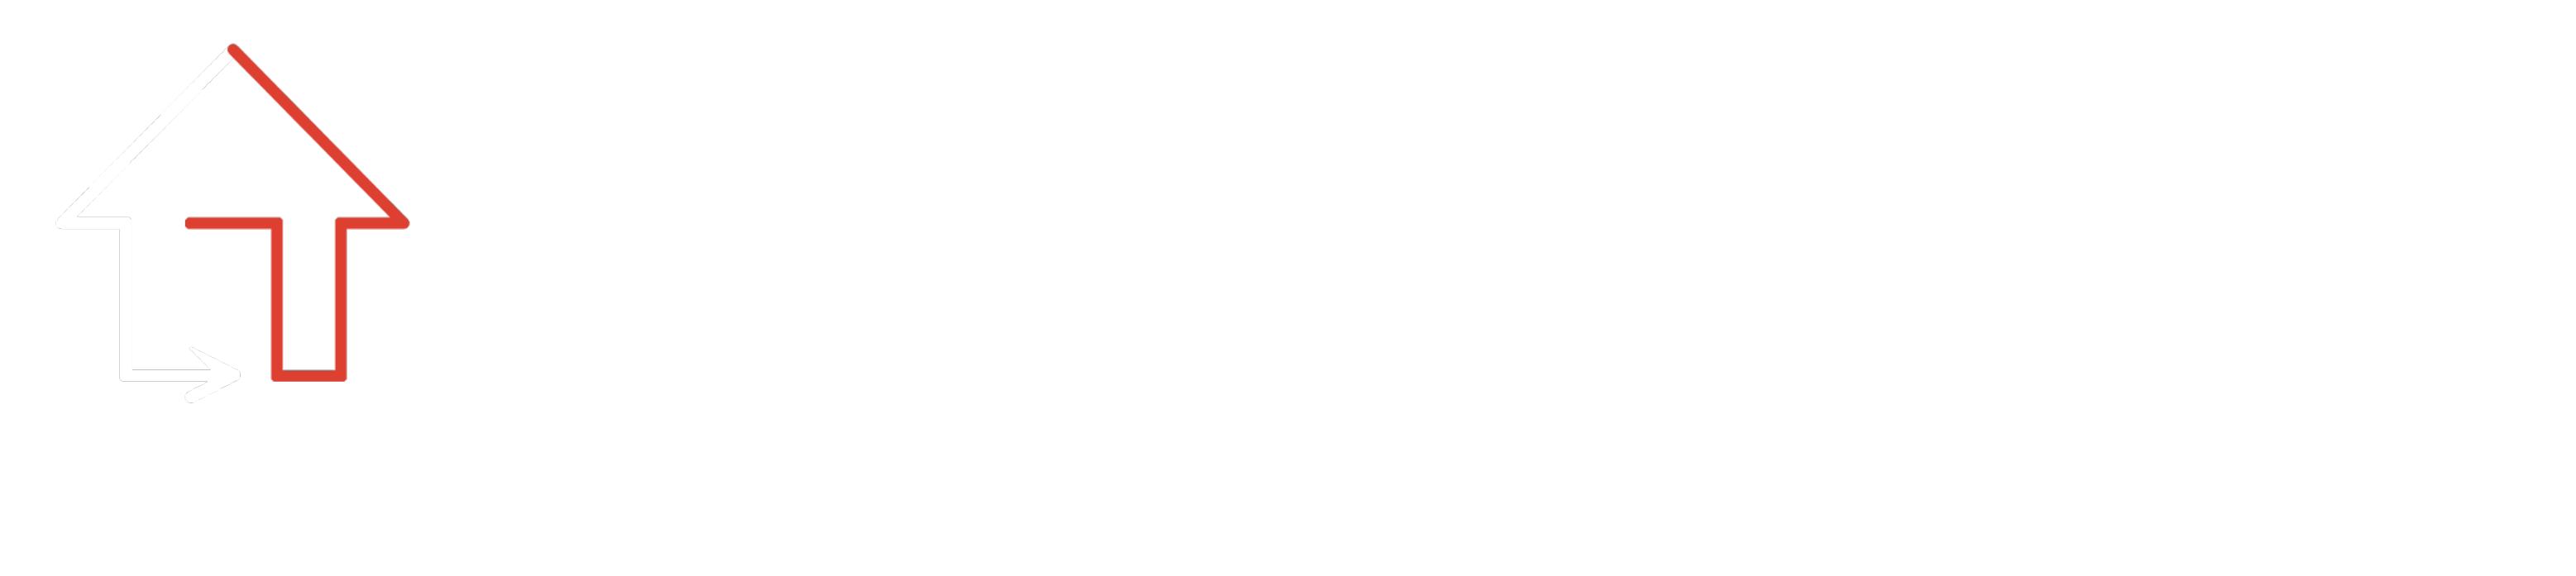 Logo Brandschutzbüro Dieburg